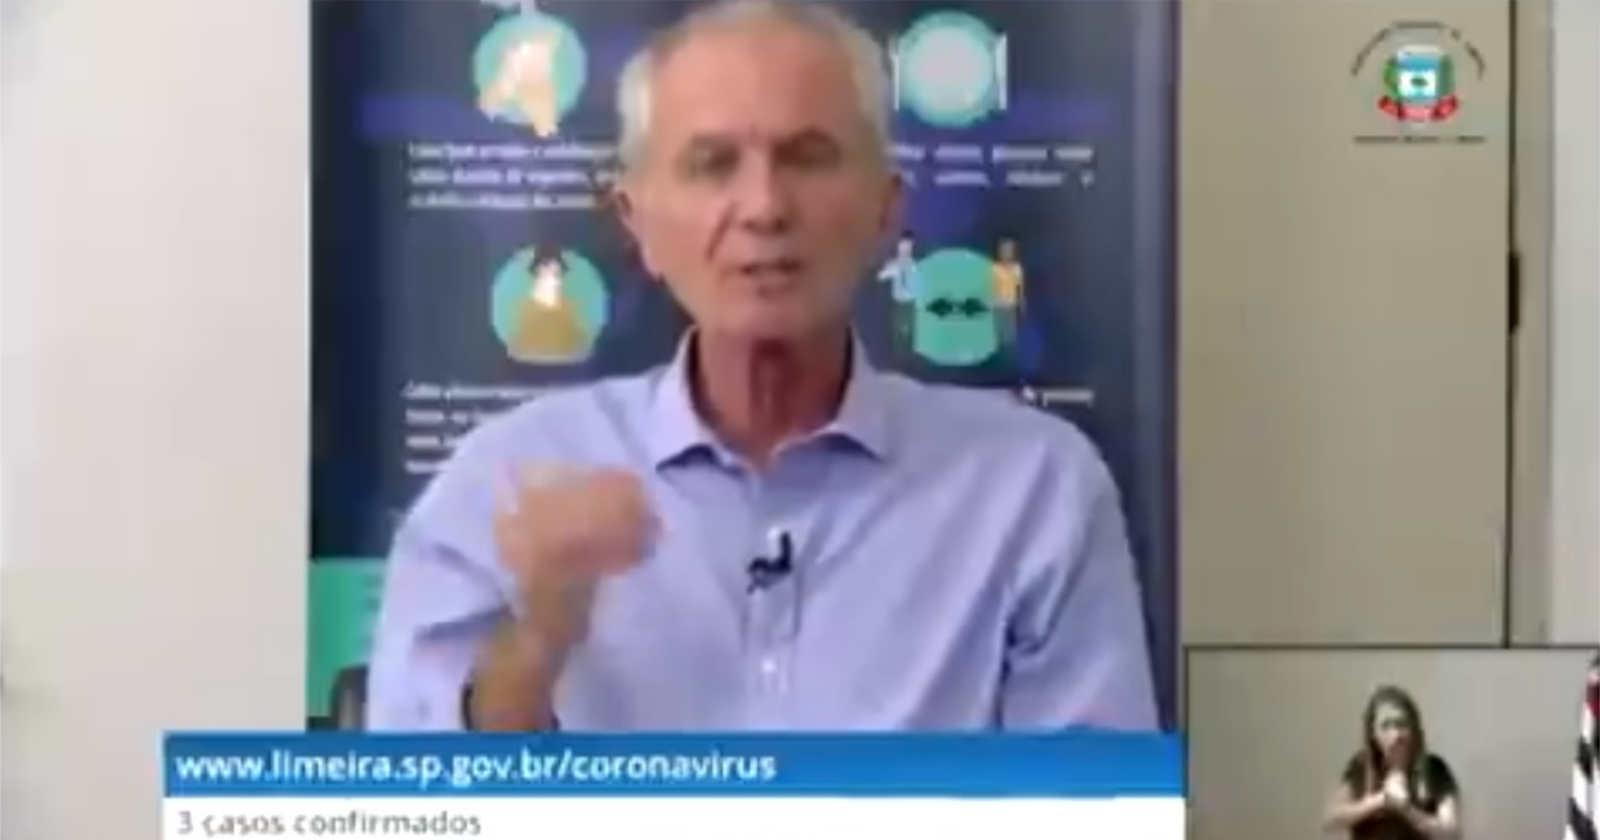 prefeito de limeira faz discurso sobre coronavírus